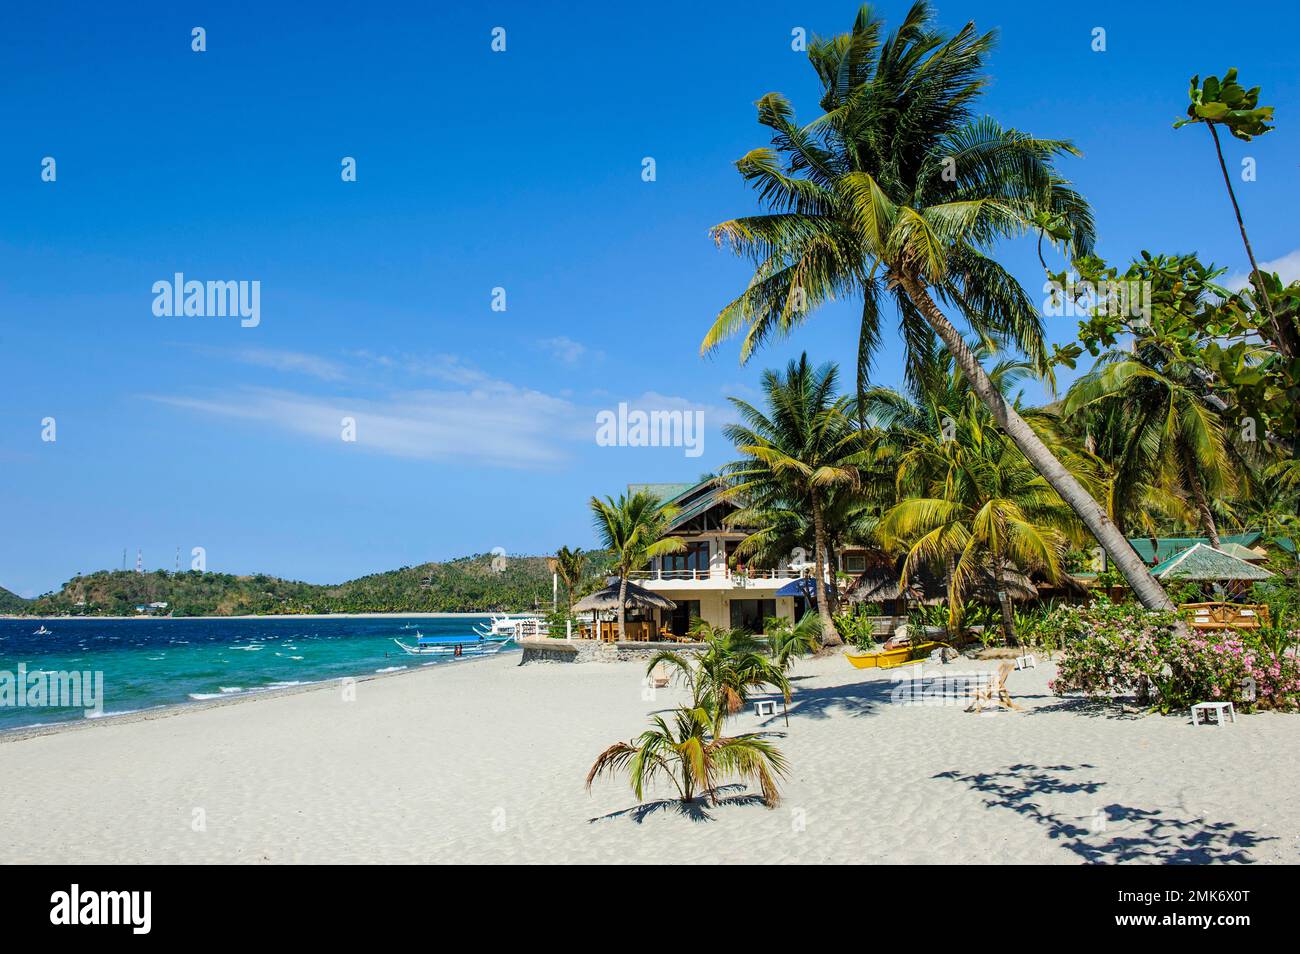 Plage de sable vide sans touristes avec cococotier (Cocos nucifera) de l'île exotique de vacances, Mindoro, Philippines Banque D'Images